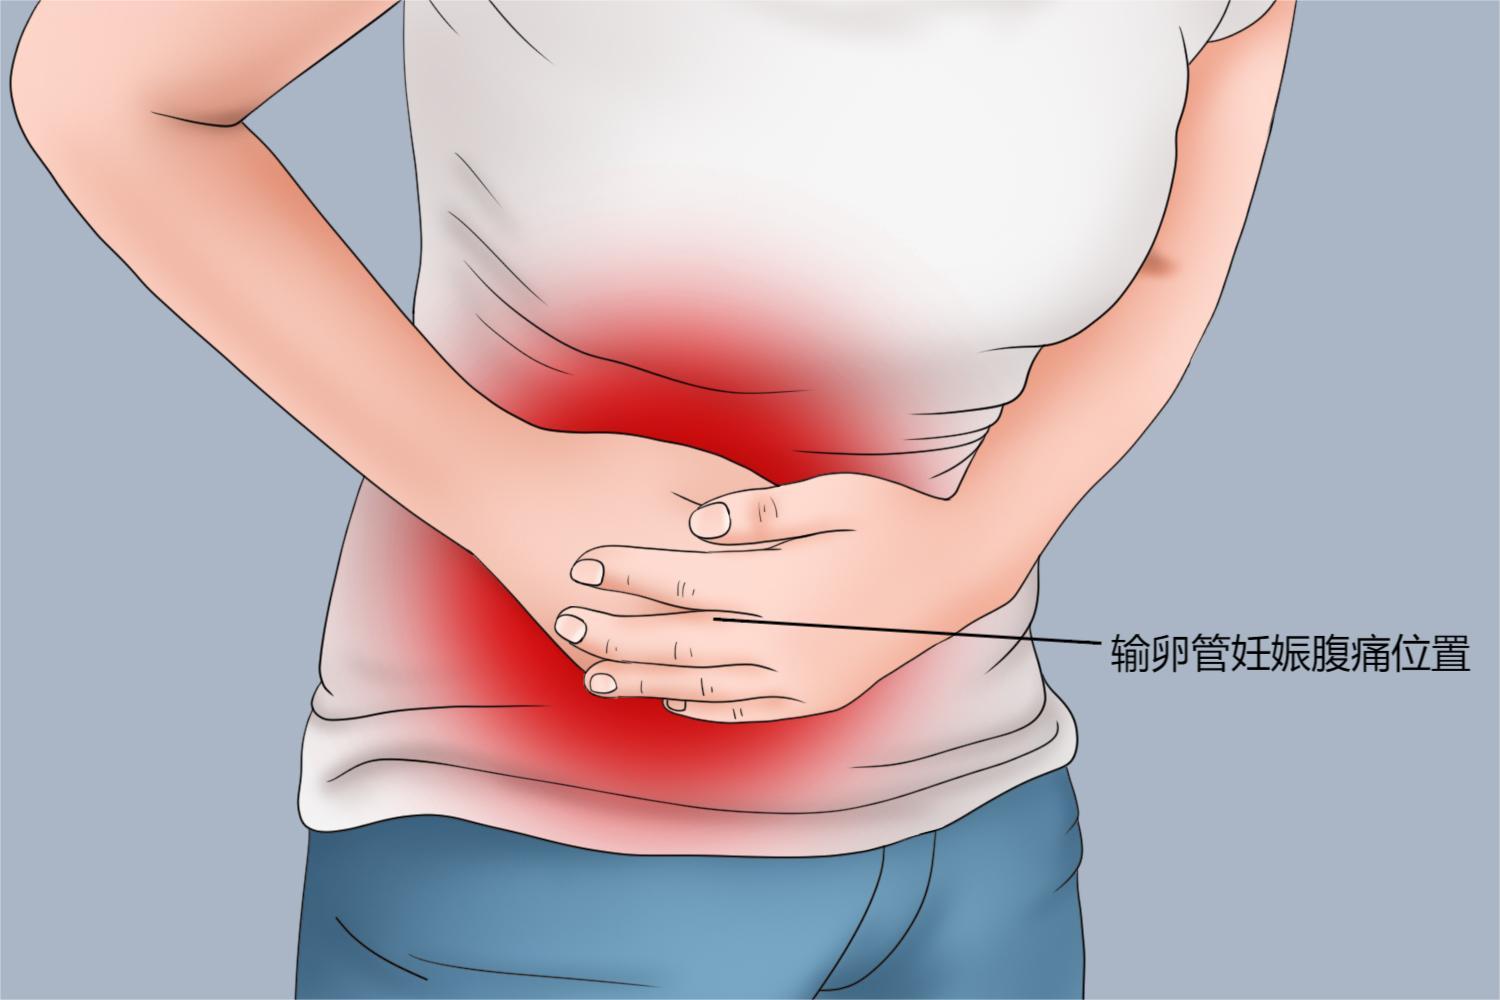 表现为一侧的隐痛或酸胀感;而随着病情加重,可能出现下腹部撕裂样疼痛